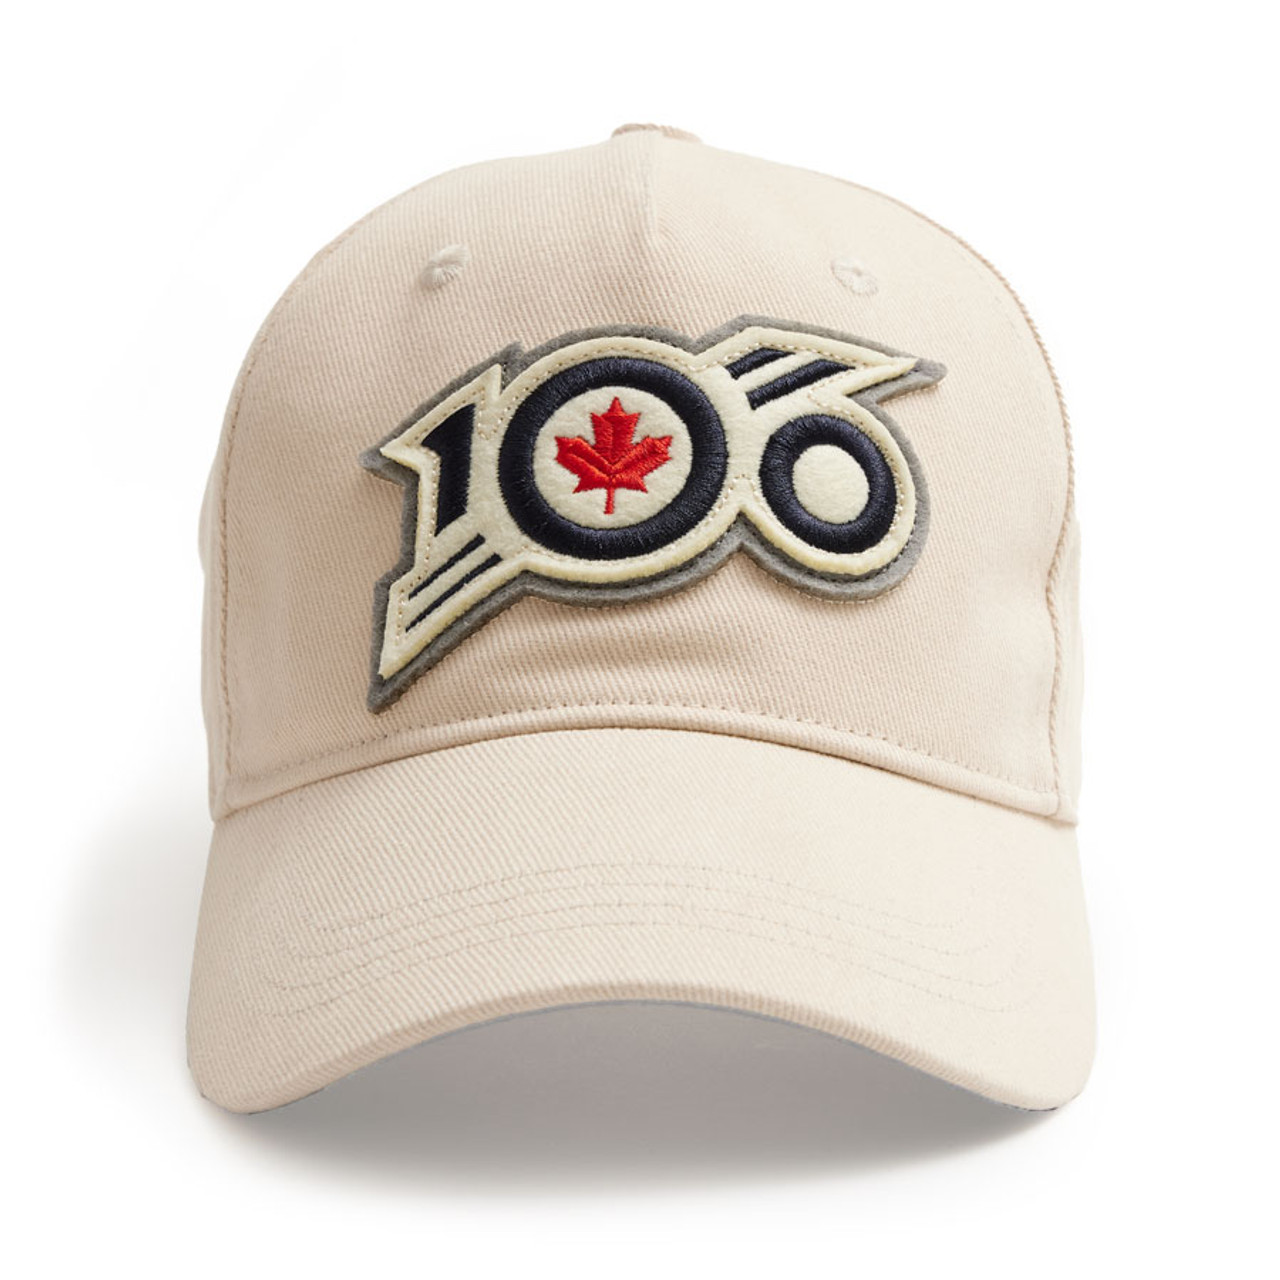 RCAF 100 Cap - Stone